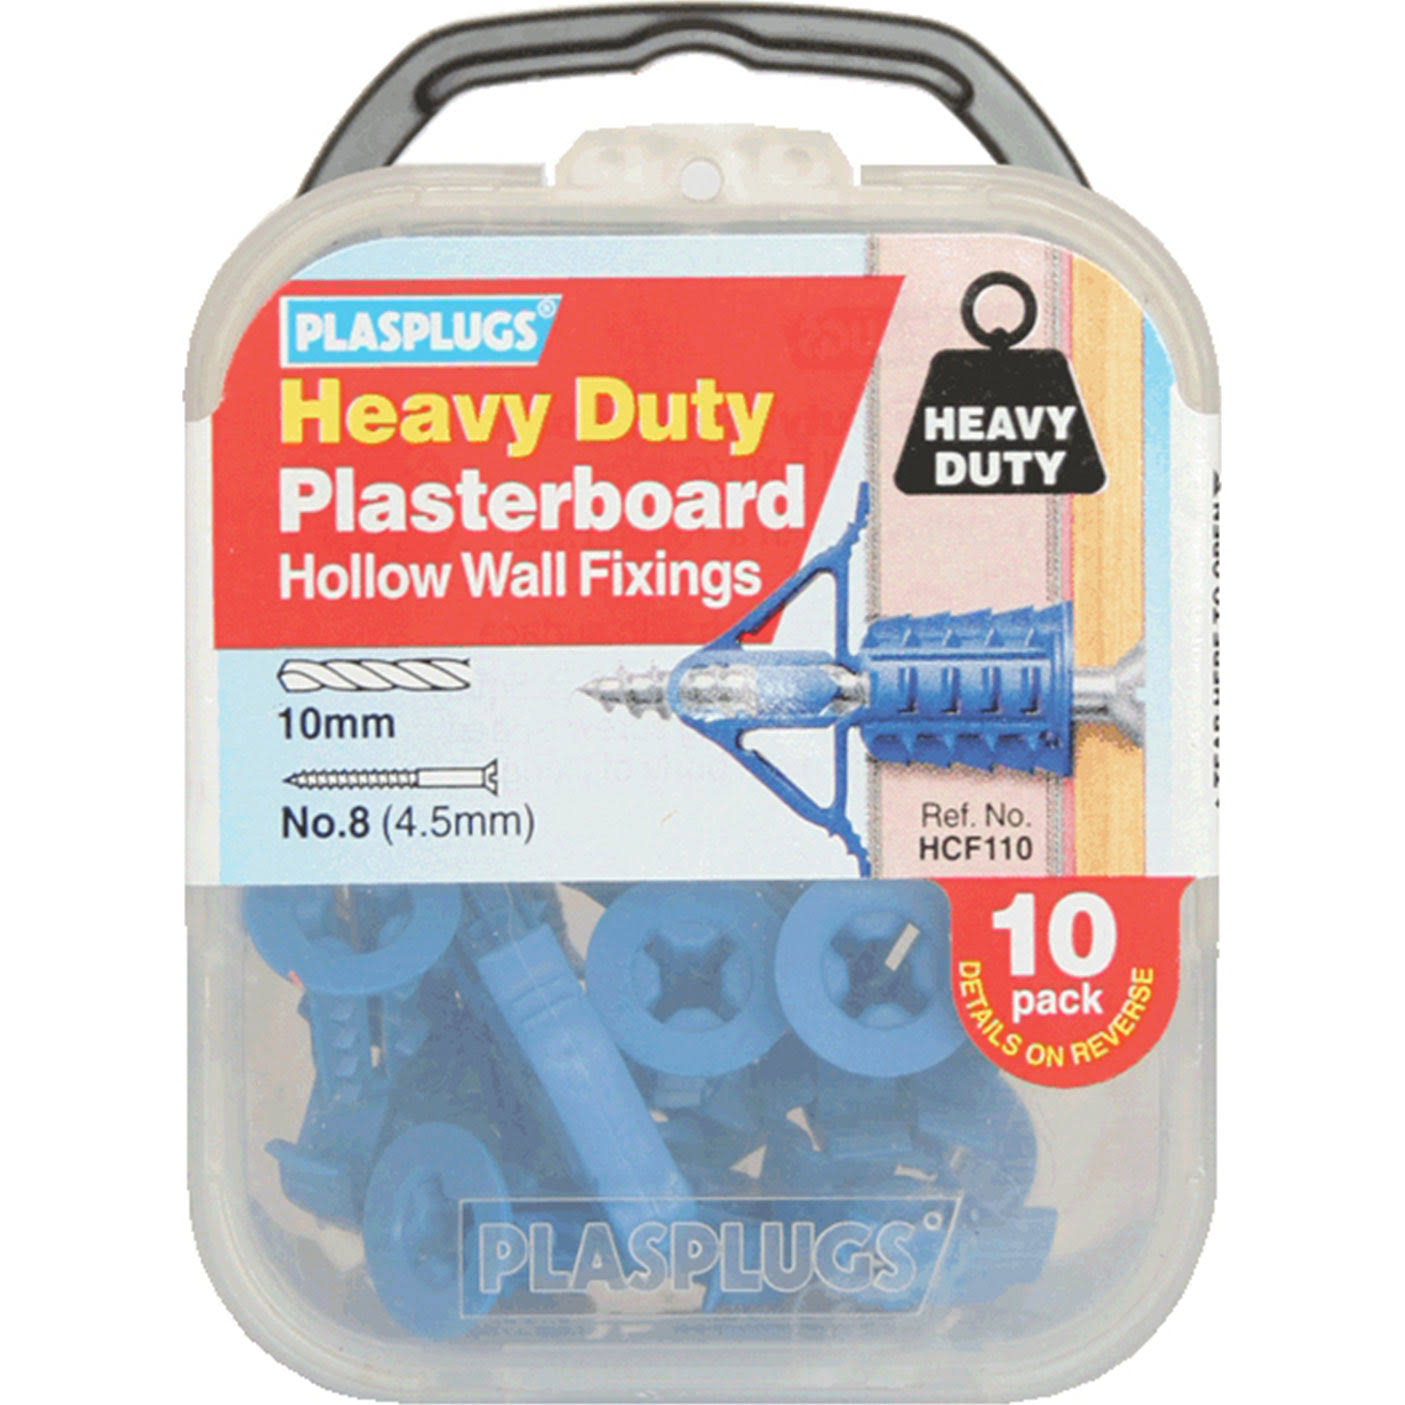 Plasplugs Heavy Duty Plasterboard Fixings - 10 Pack